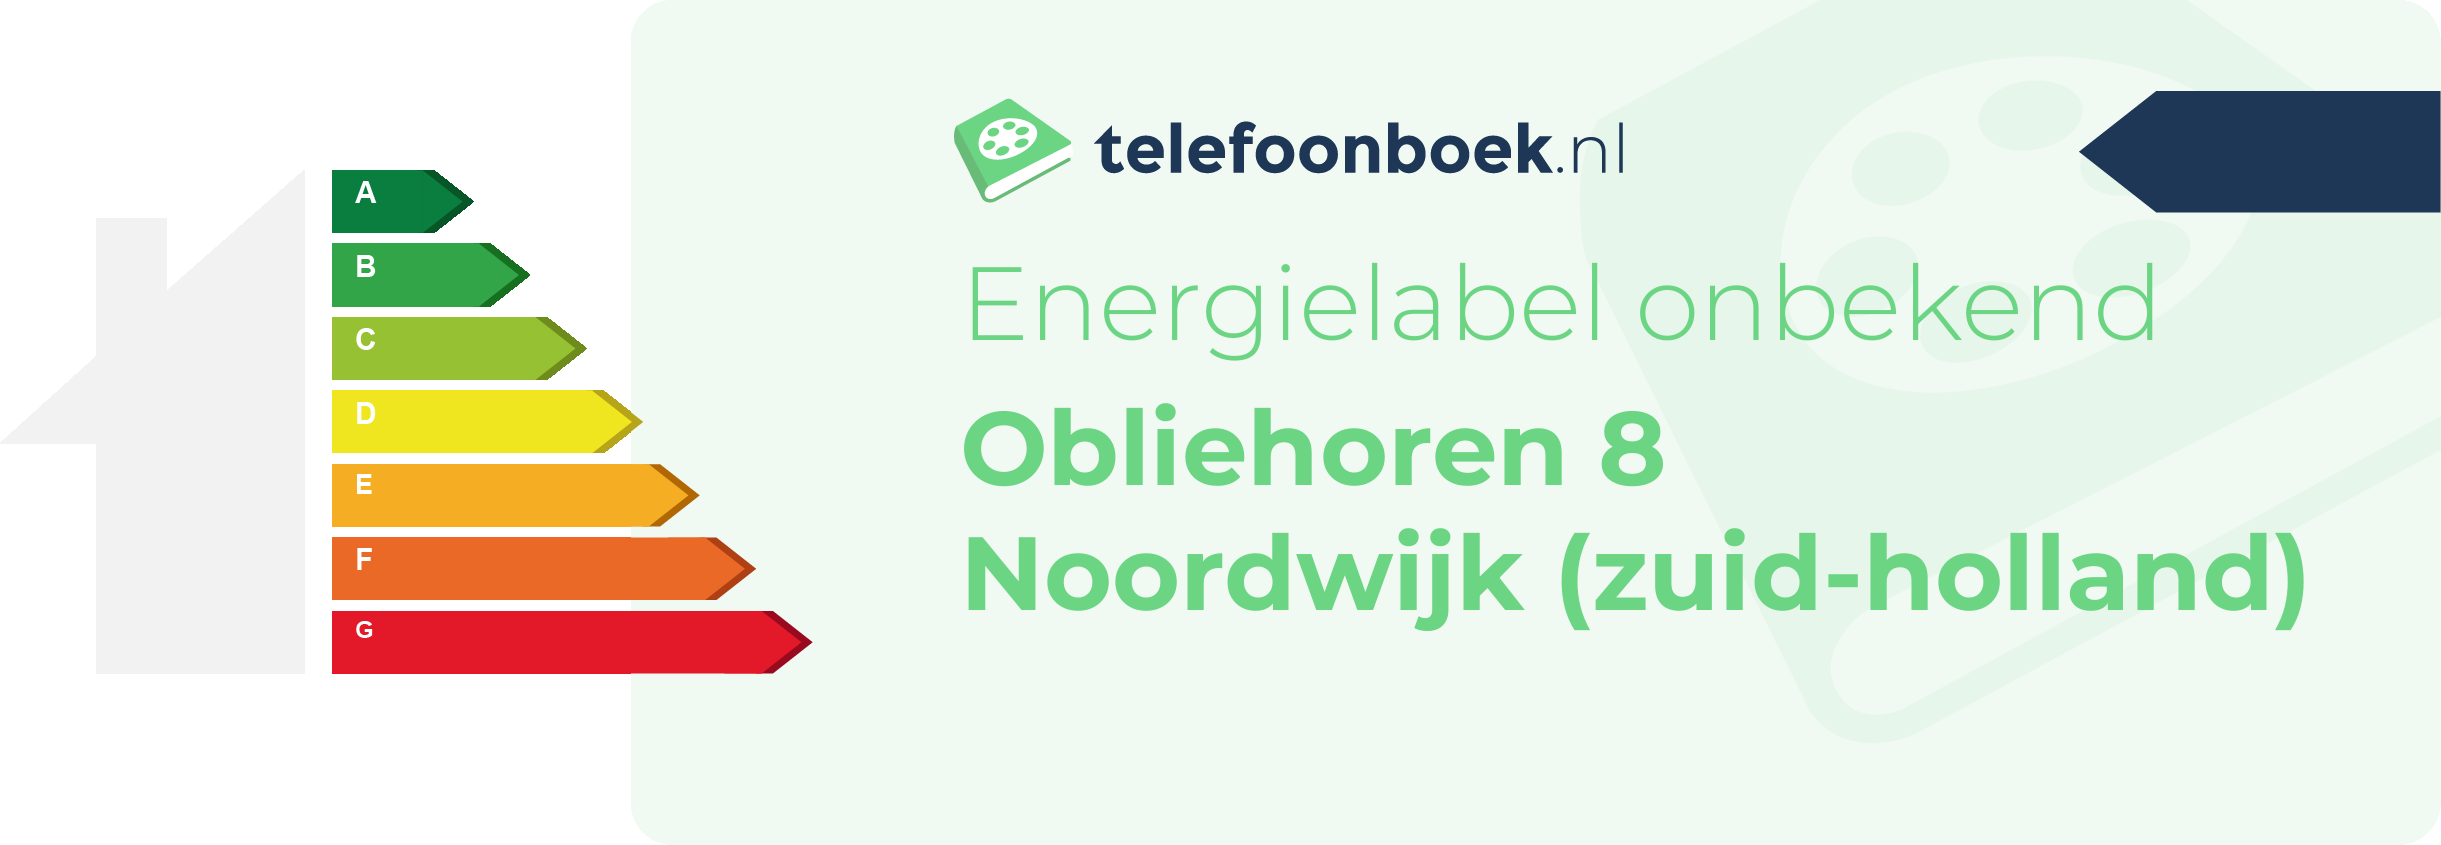 Energielabel Obliehoren 8 Noordwijk (Zuid-Holland)